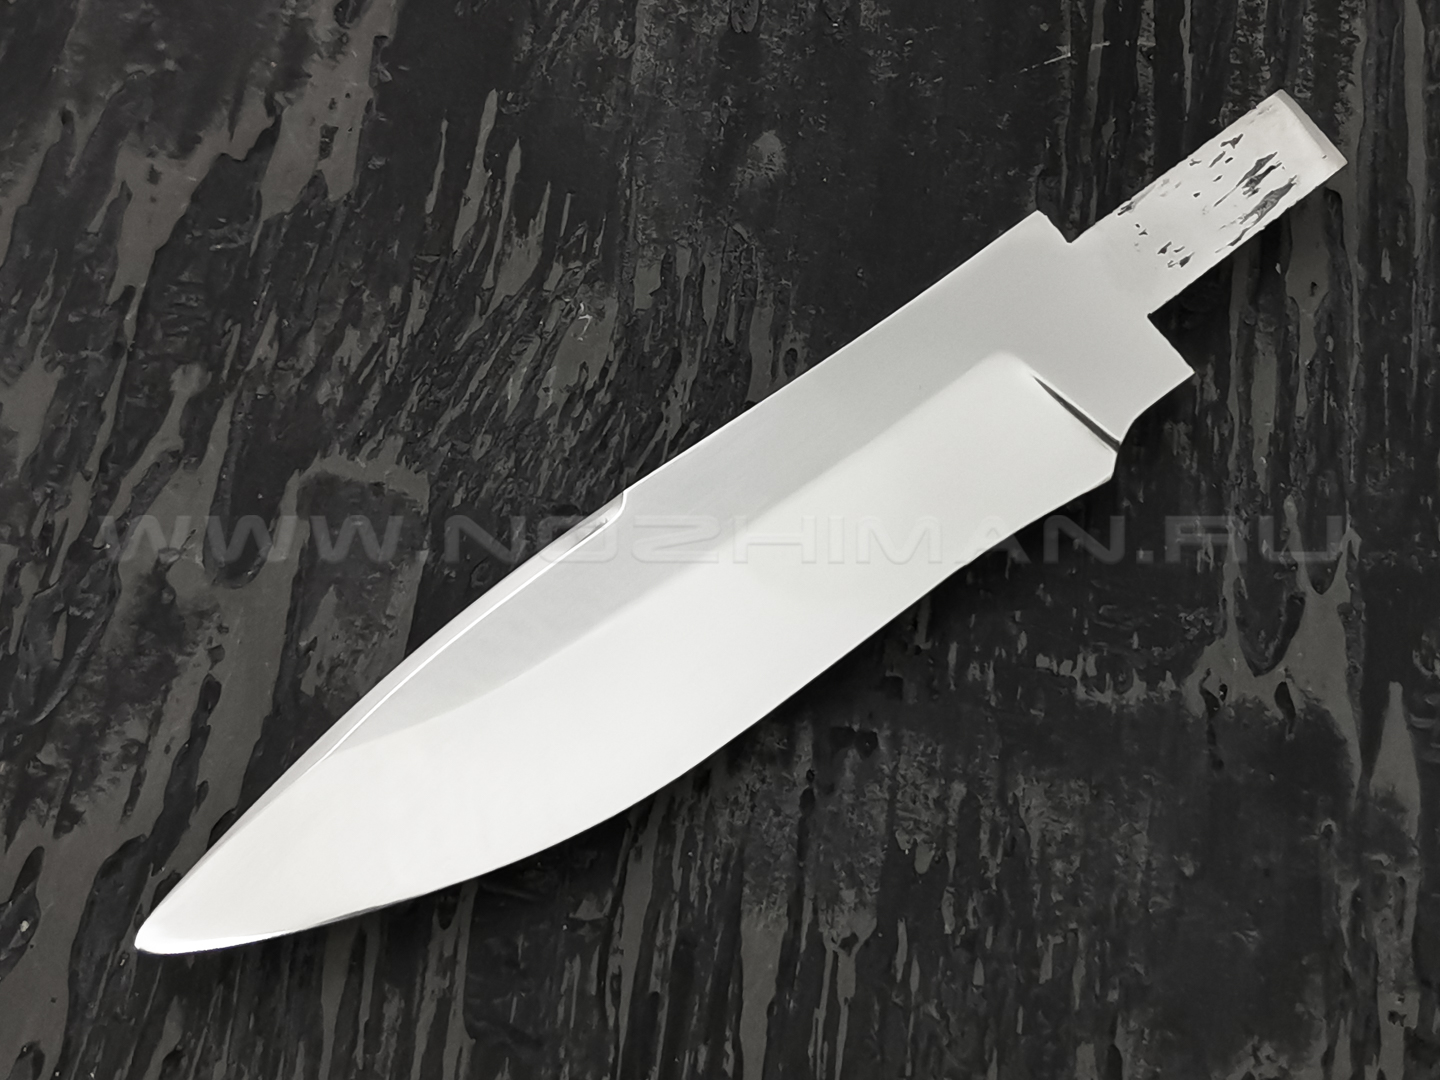 Blade production - Интернет-магазин ножей от производителя.